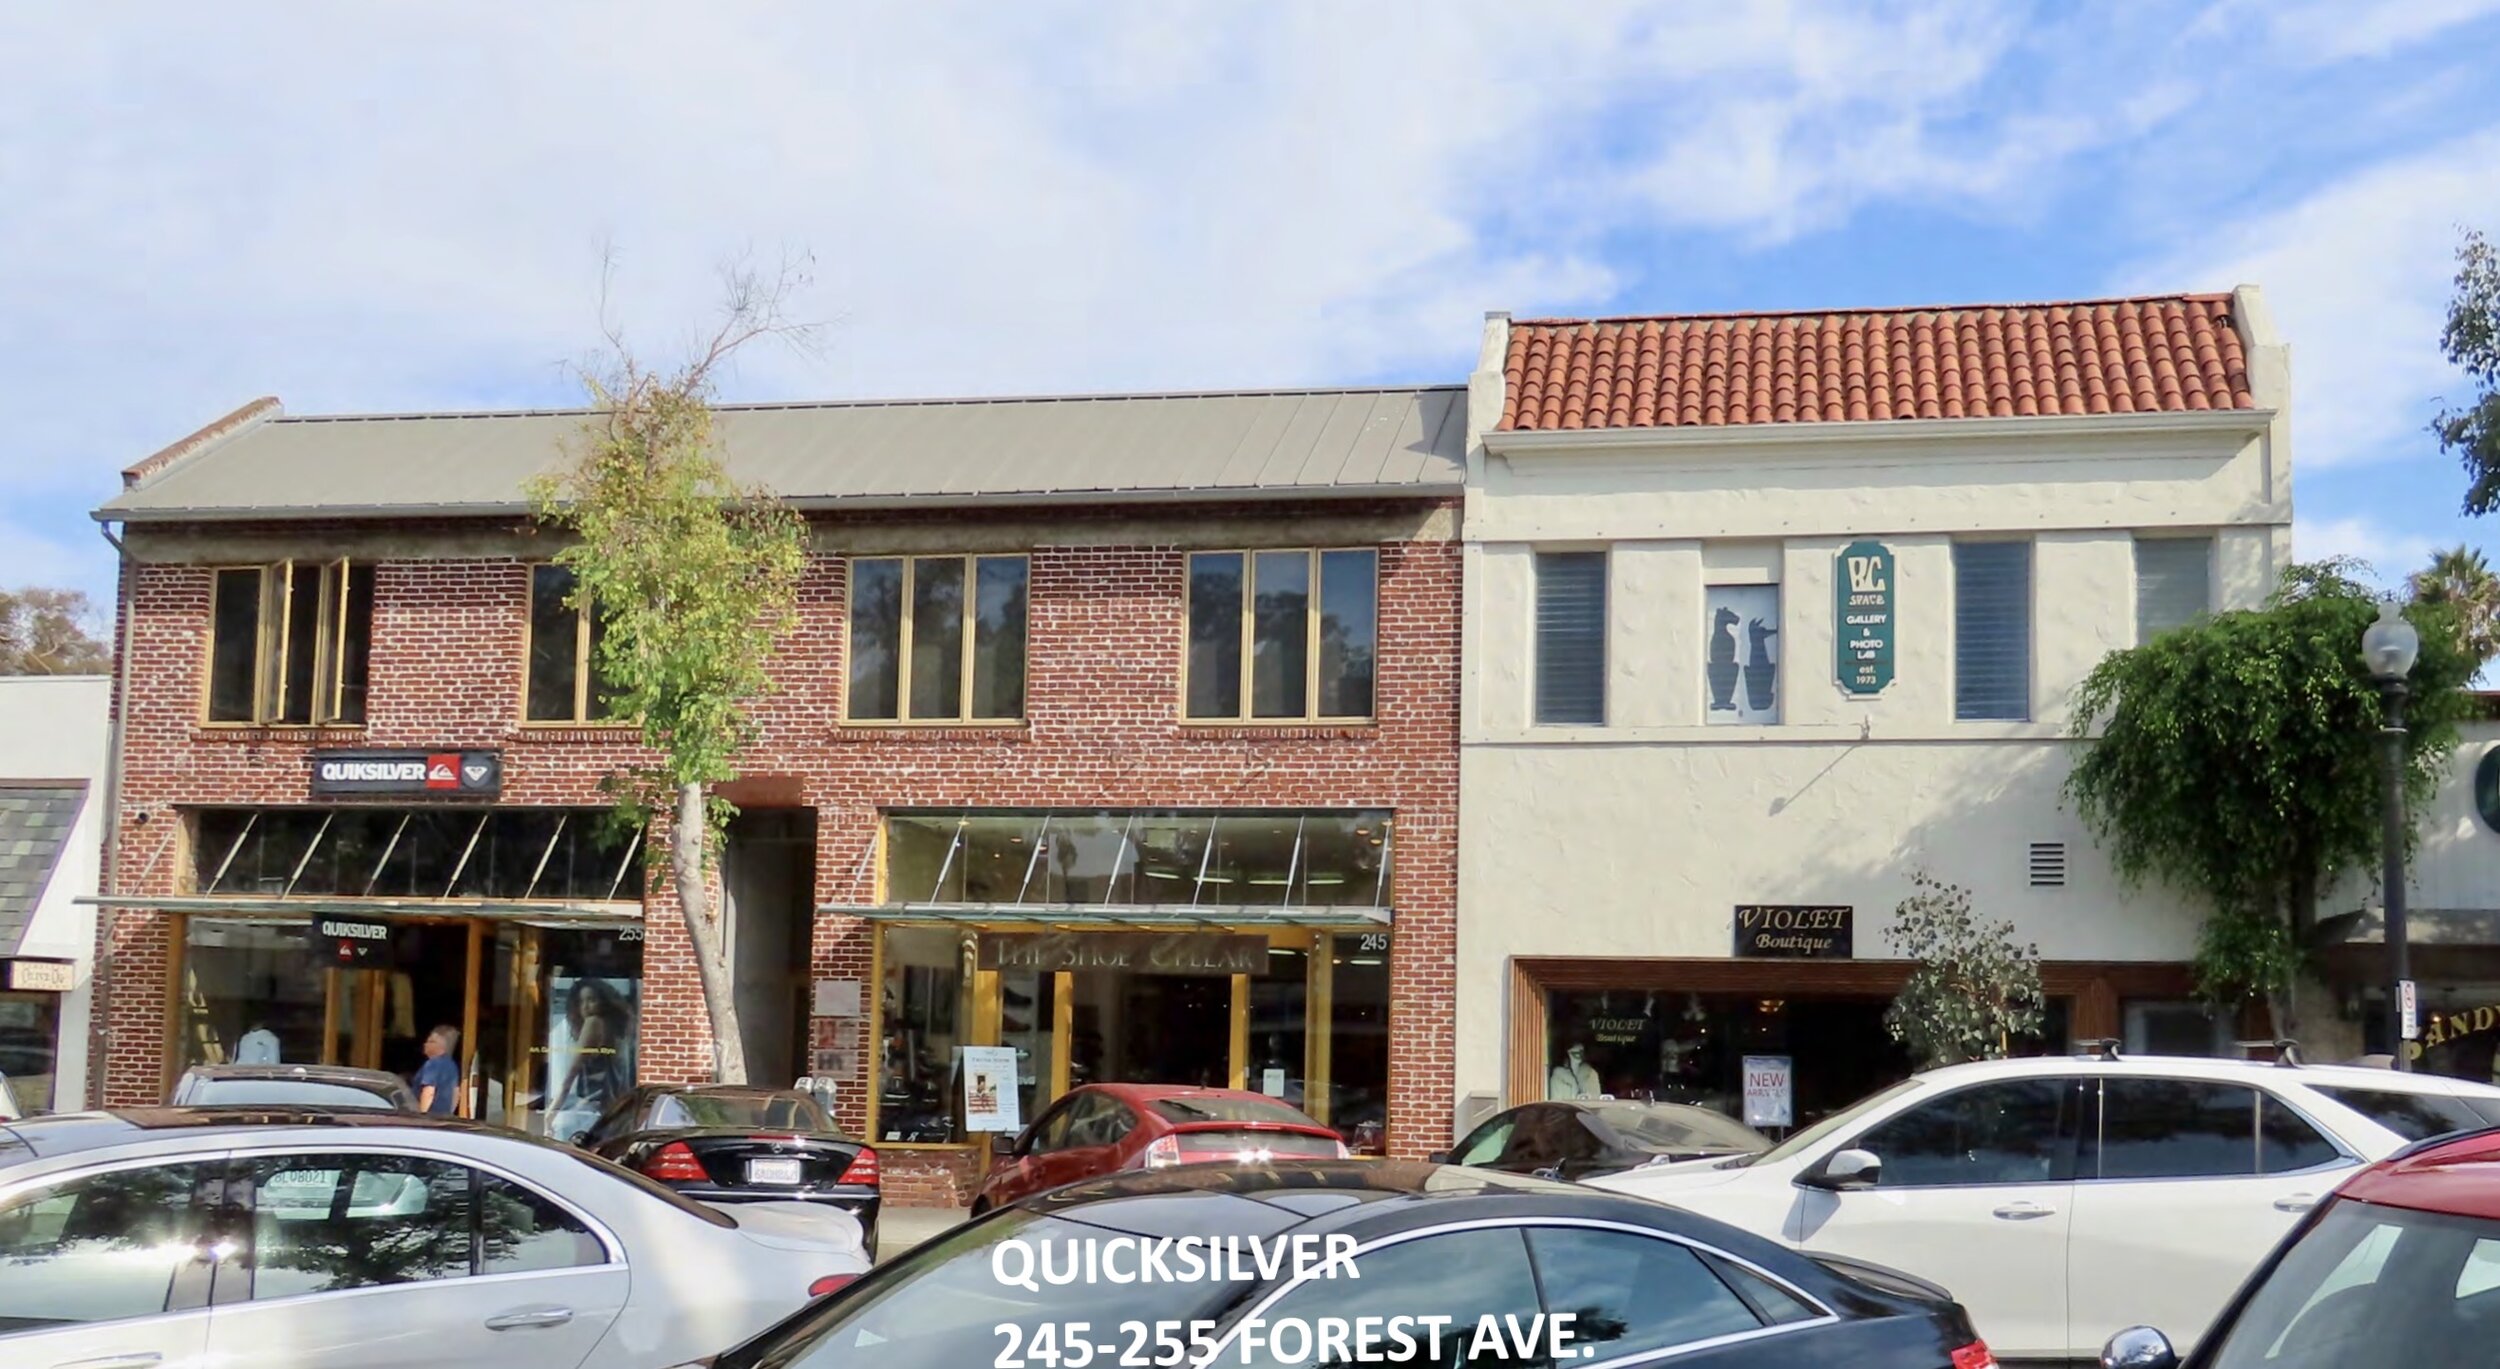 Quicksilver, 245-255 Forest Avenue